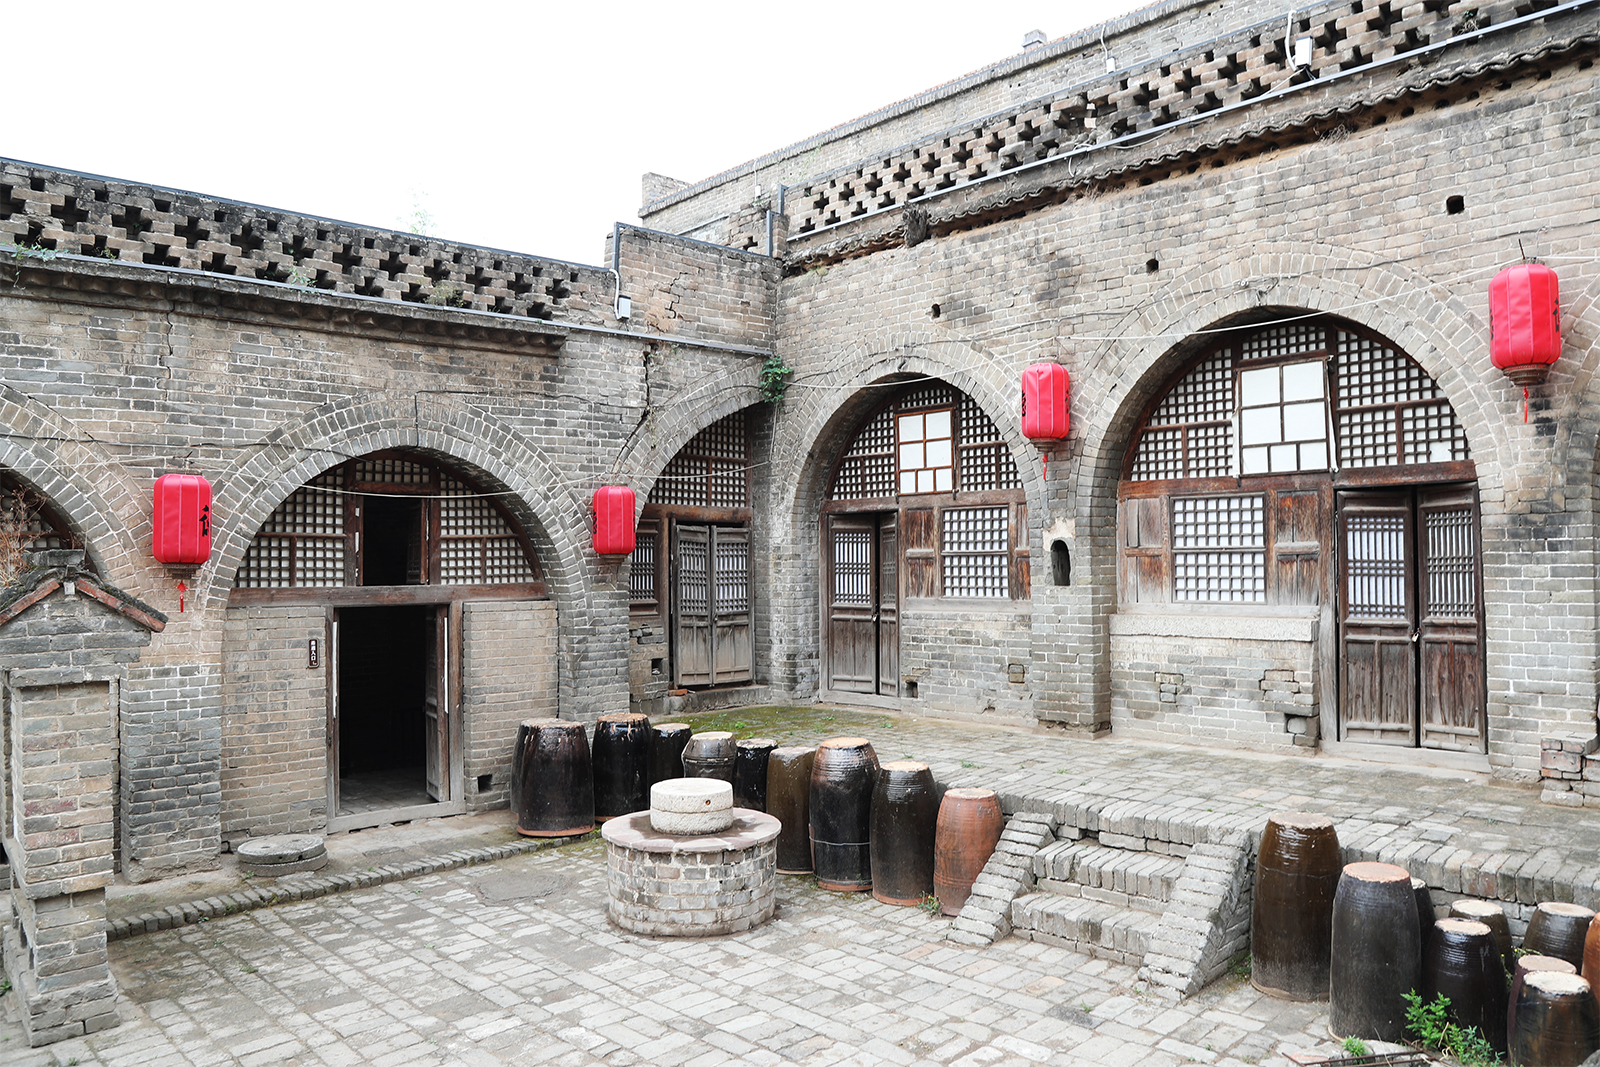 A courtyard in Zhangjiata Village /CGTN